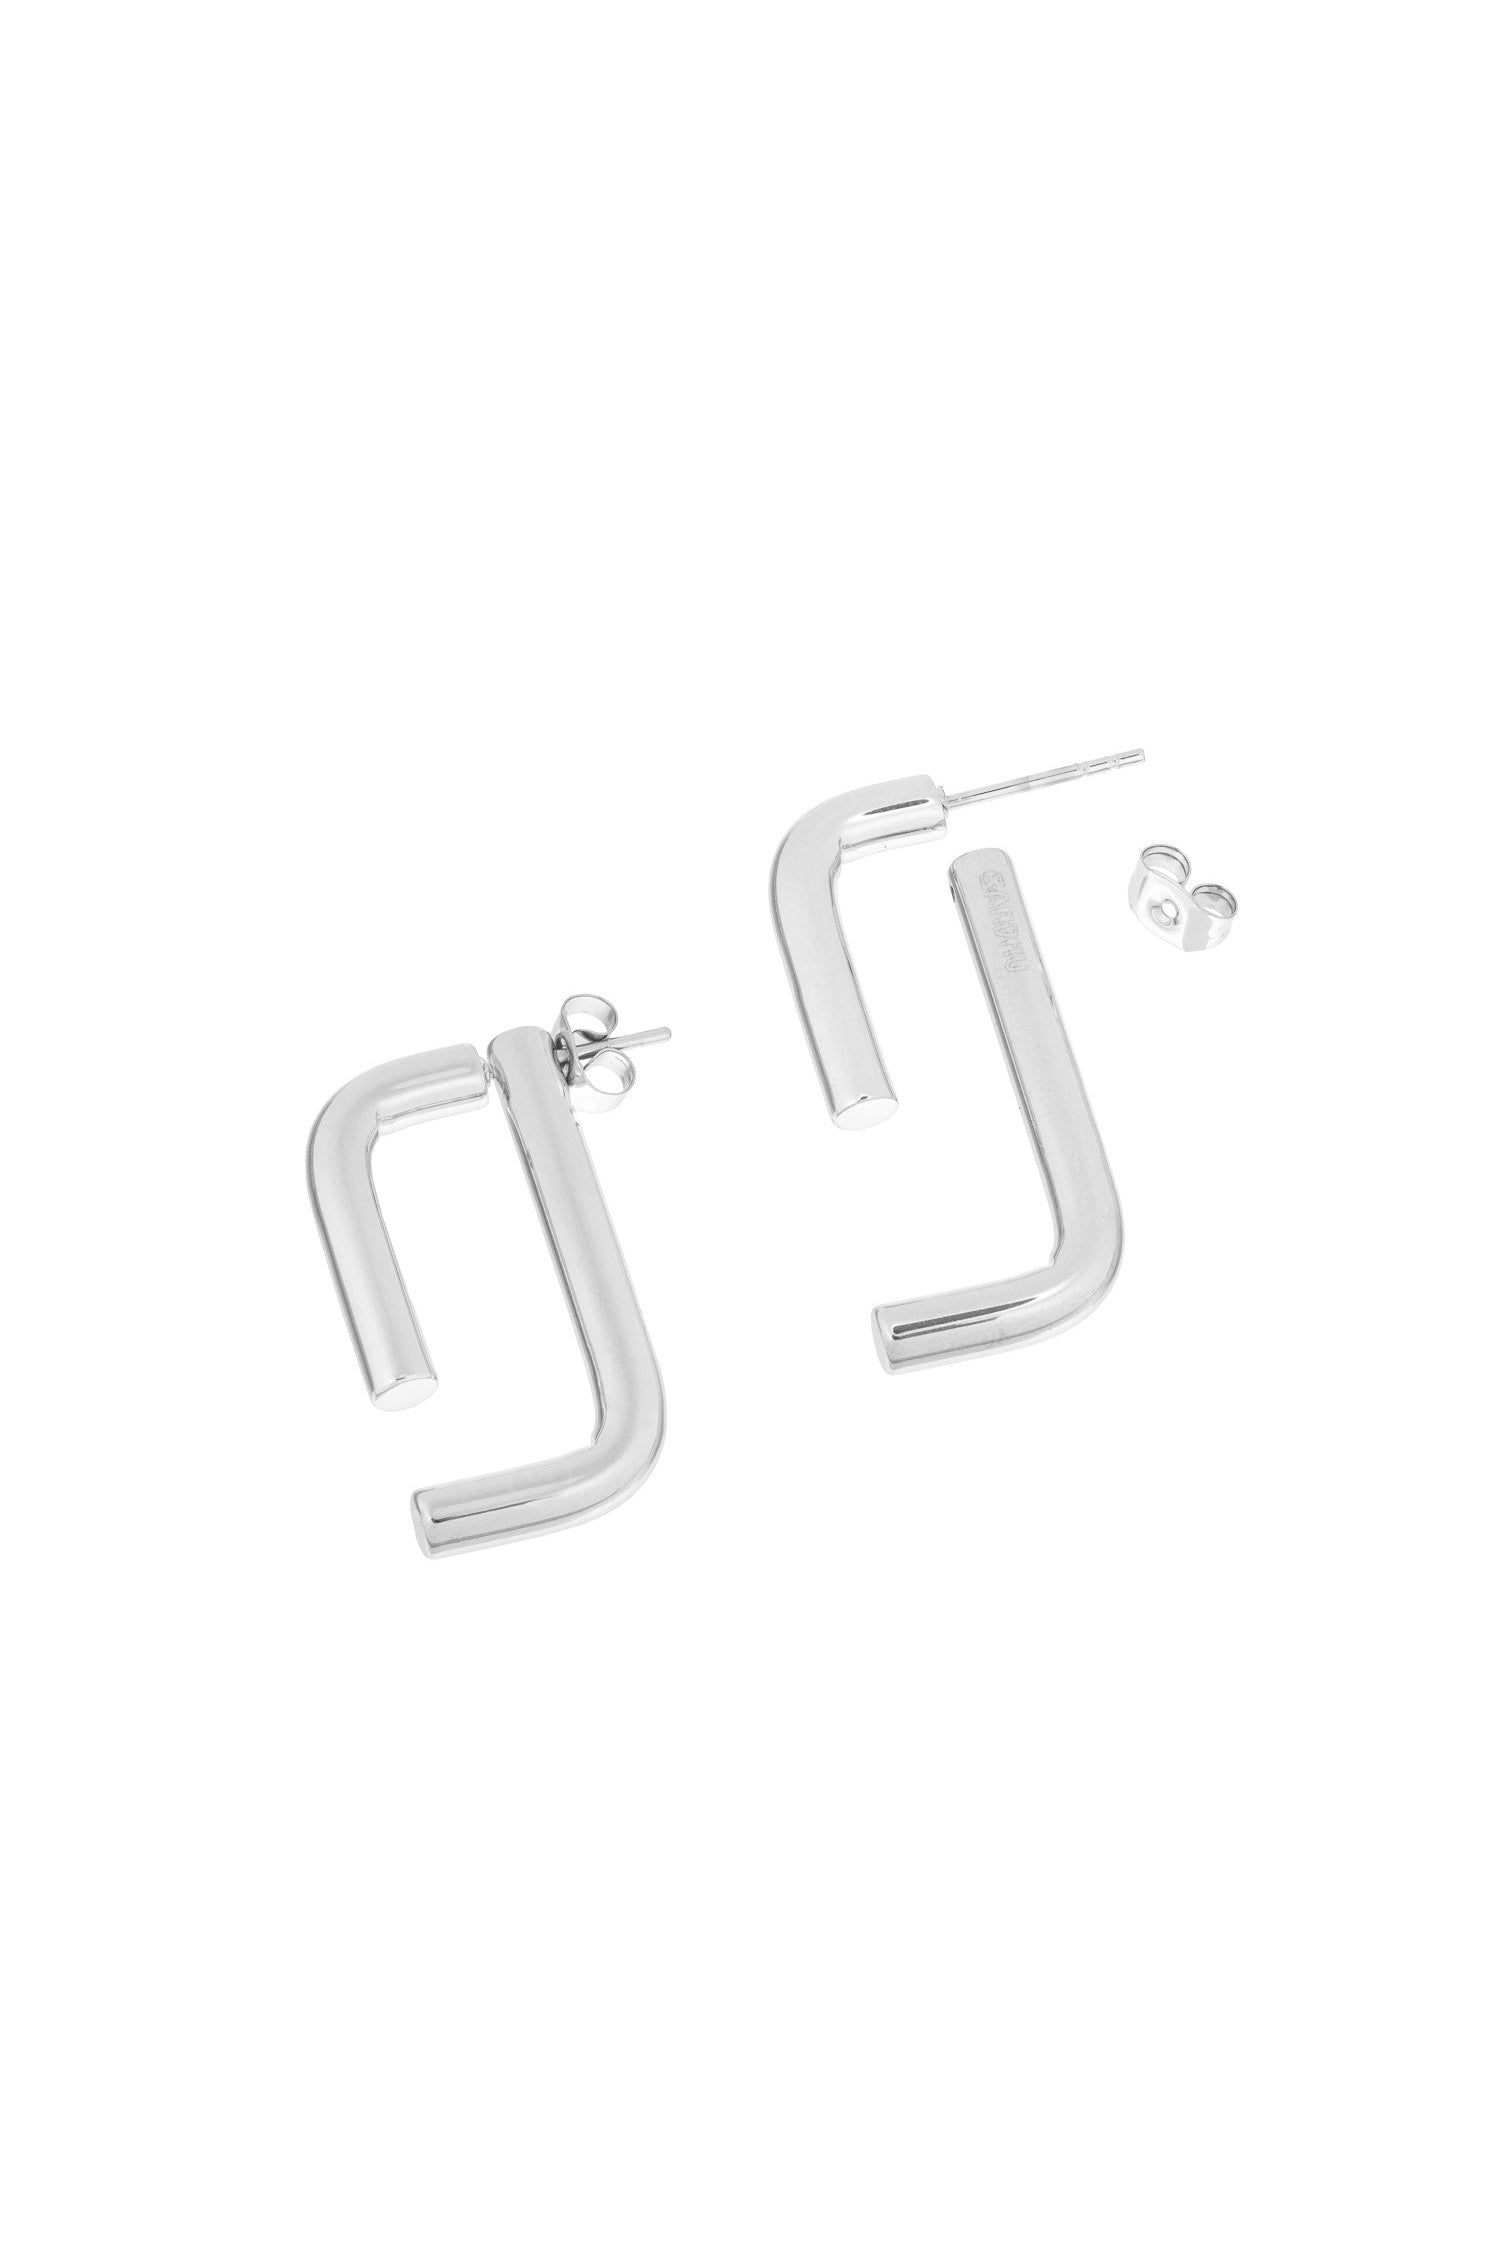 Bandhu Linked Earrings - Silver - RUM Amsterdam